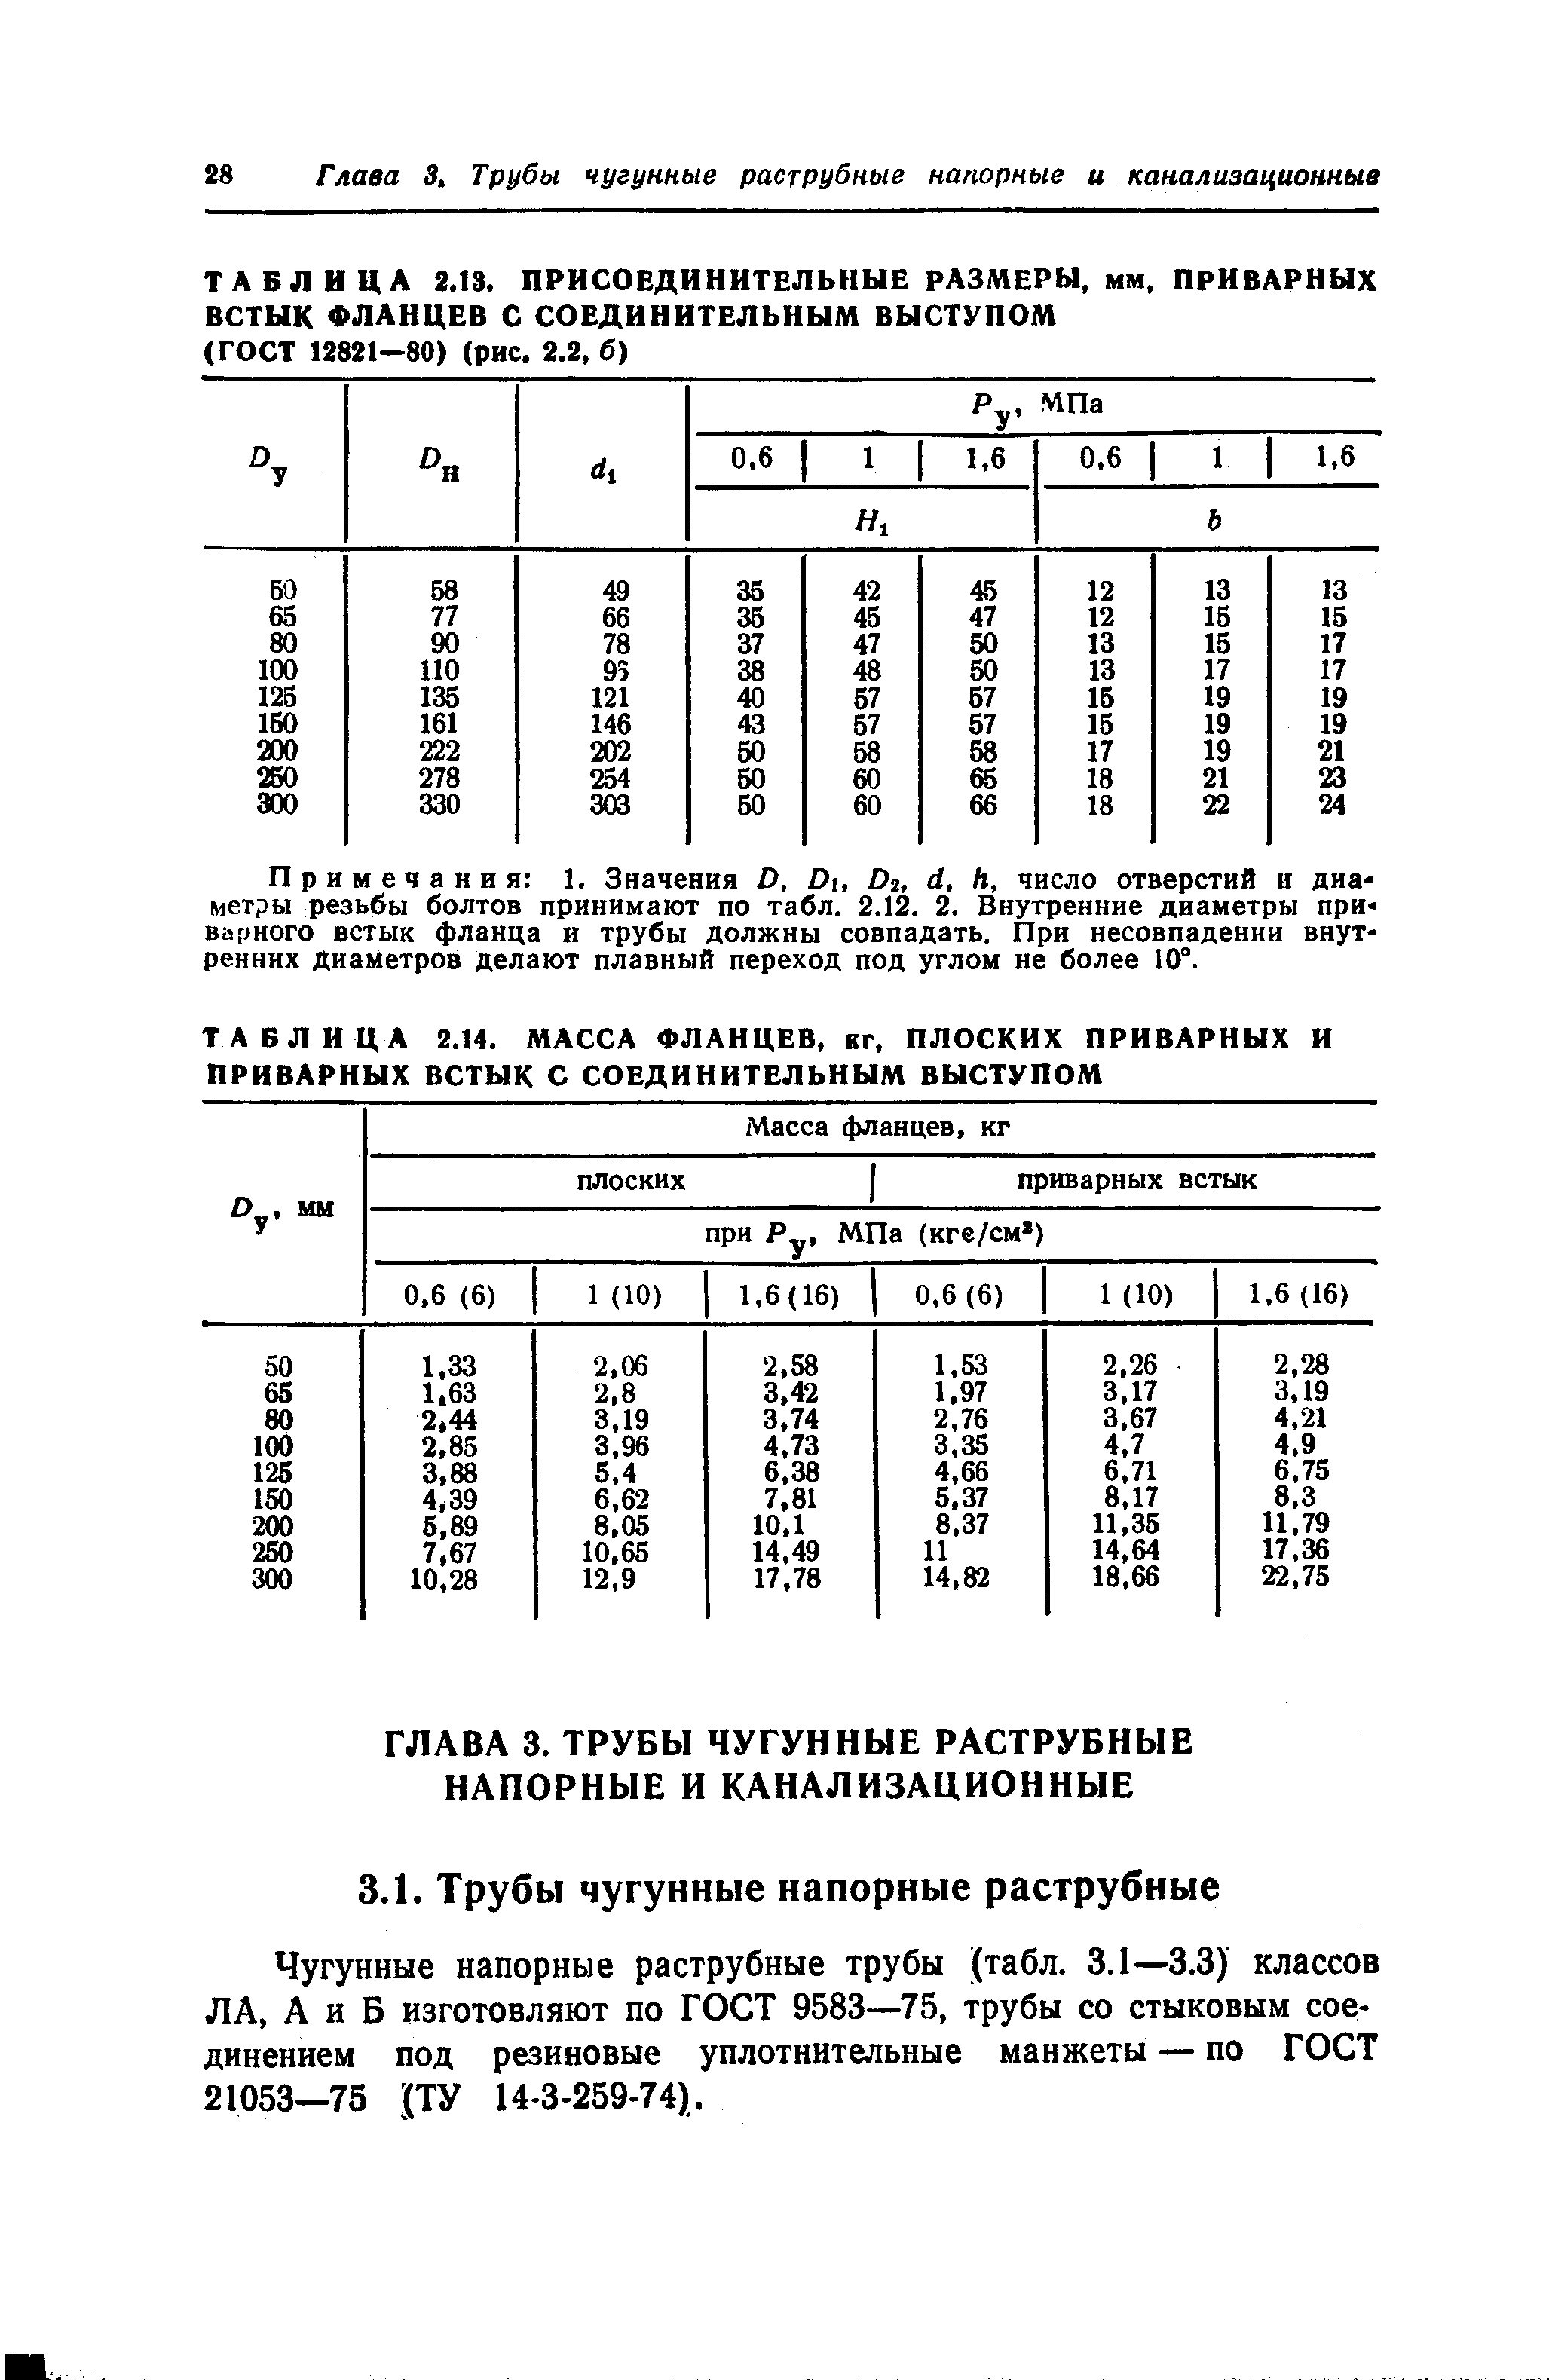 Чугунные напорные раструбные трубы (табл. 3.1—3.3) классов ЛА, А и Б изготовляют по ГОСТ 9583—75, трубы со стыковым соединением под резиновые уплотнительные манжеты — по ГОСТ 21053—75 (ТУ 14-3-259-74).
